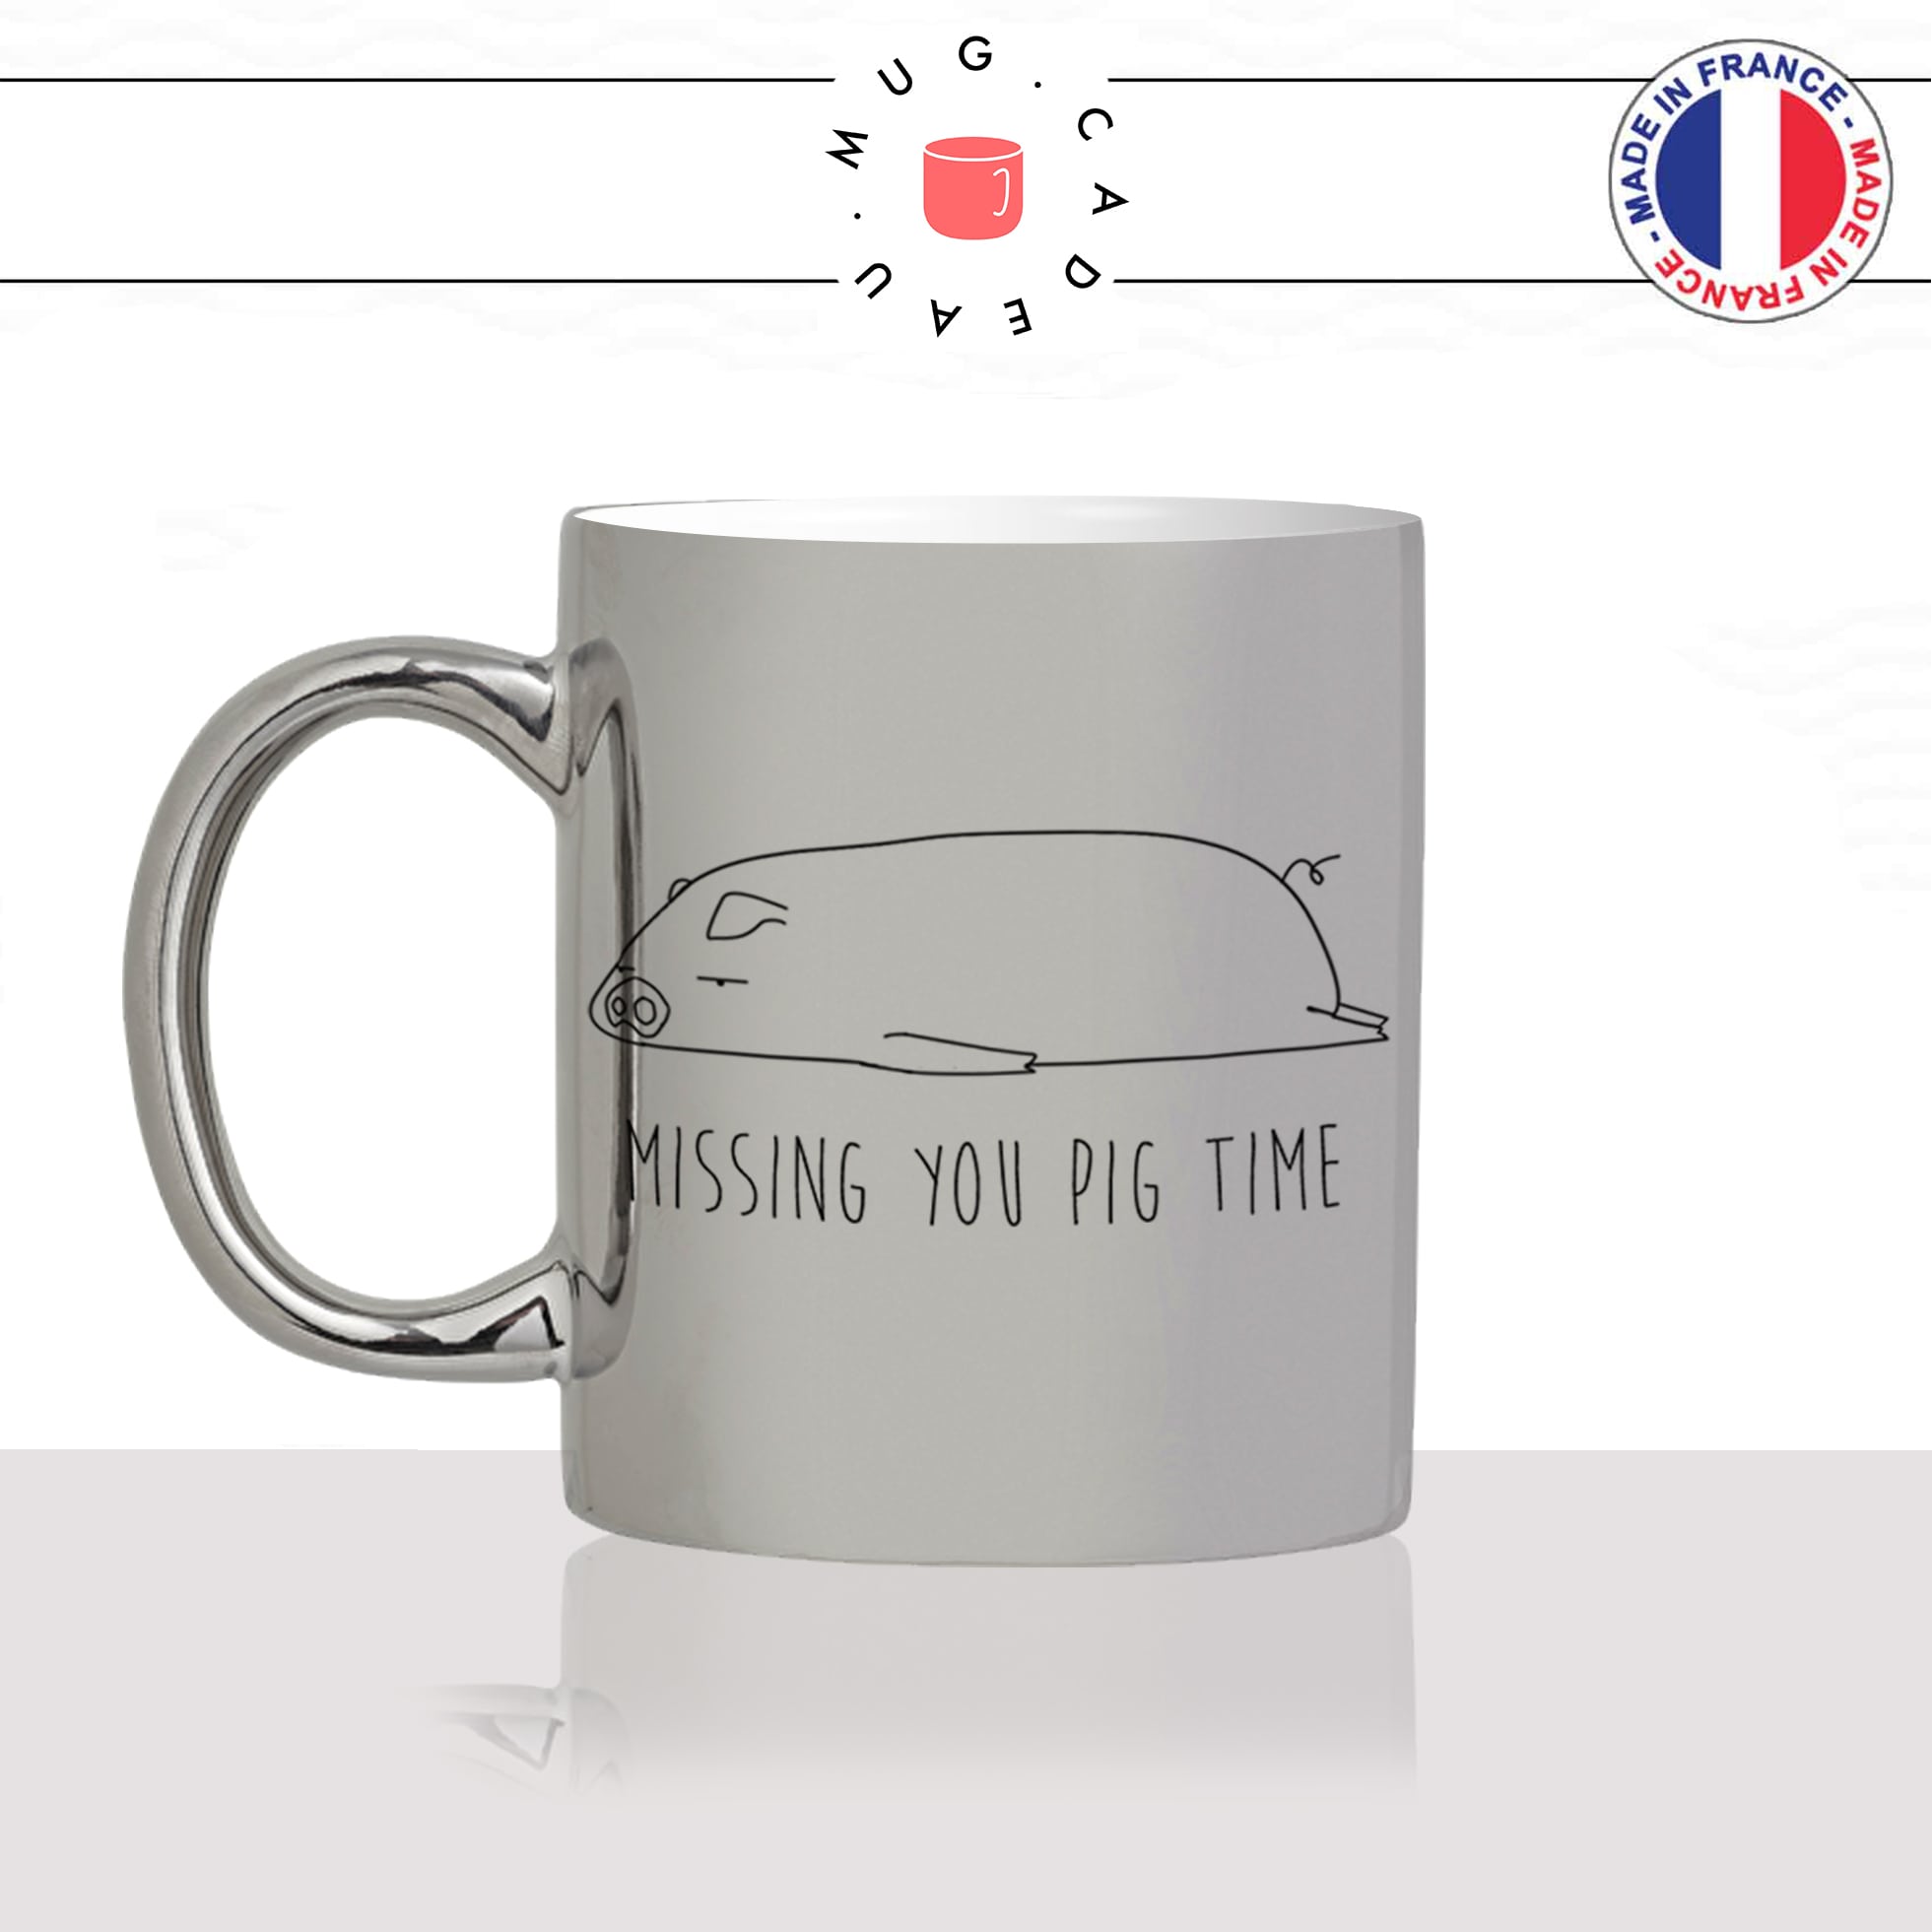 mug-tasse-argenté-silver-missing-you-tu-me-manque-pig-time-cochon-drole-mignon-animal-noir-fun-café-thé-idée-cadeau-original-personnalisé-min